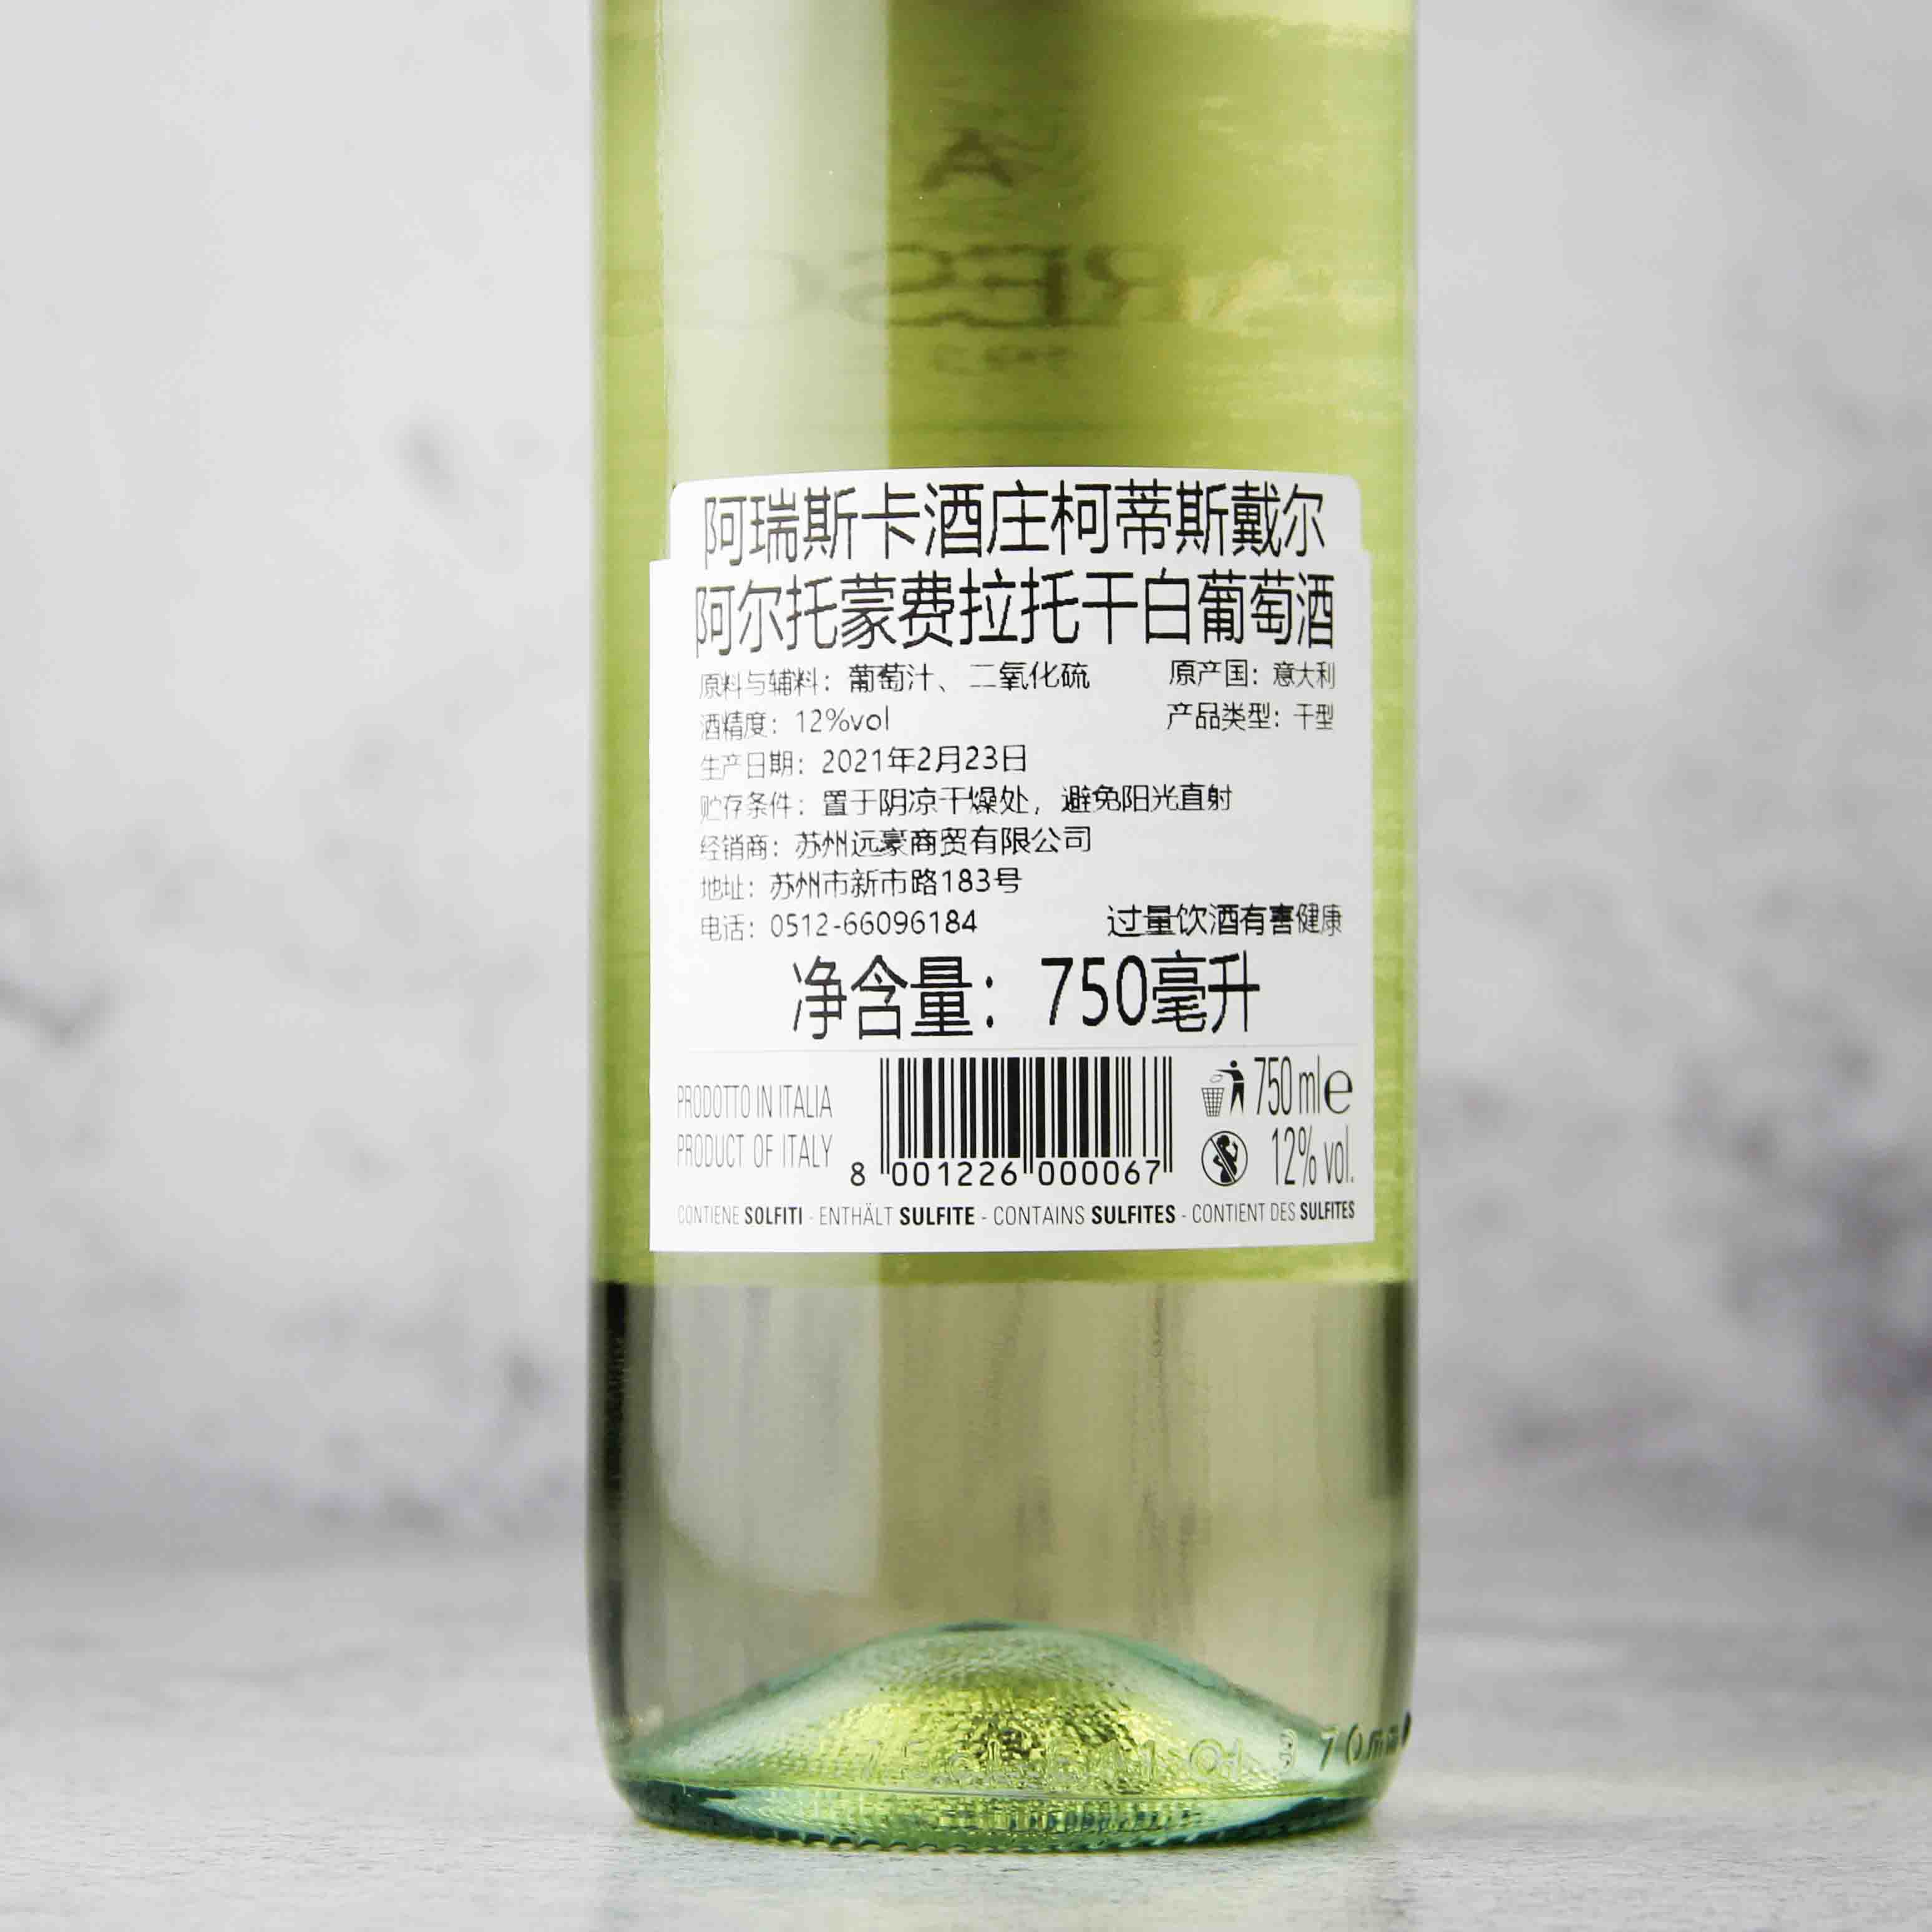 意大利皮埃蒙特ARESCA酒庄柯蒂斯戴尔阿尔托·蒙费拉托白葡萄酒